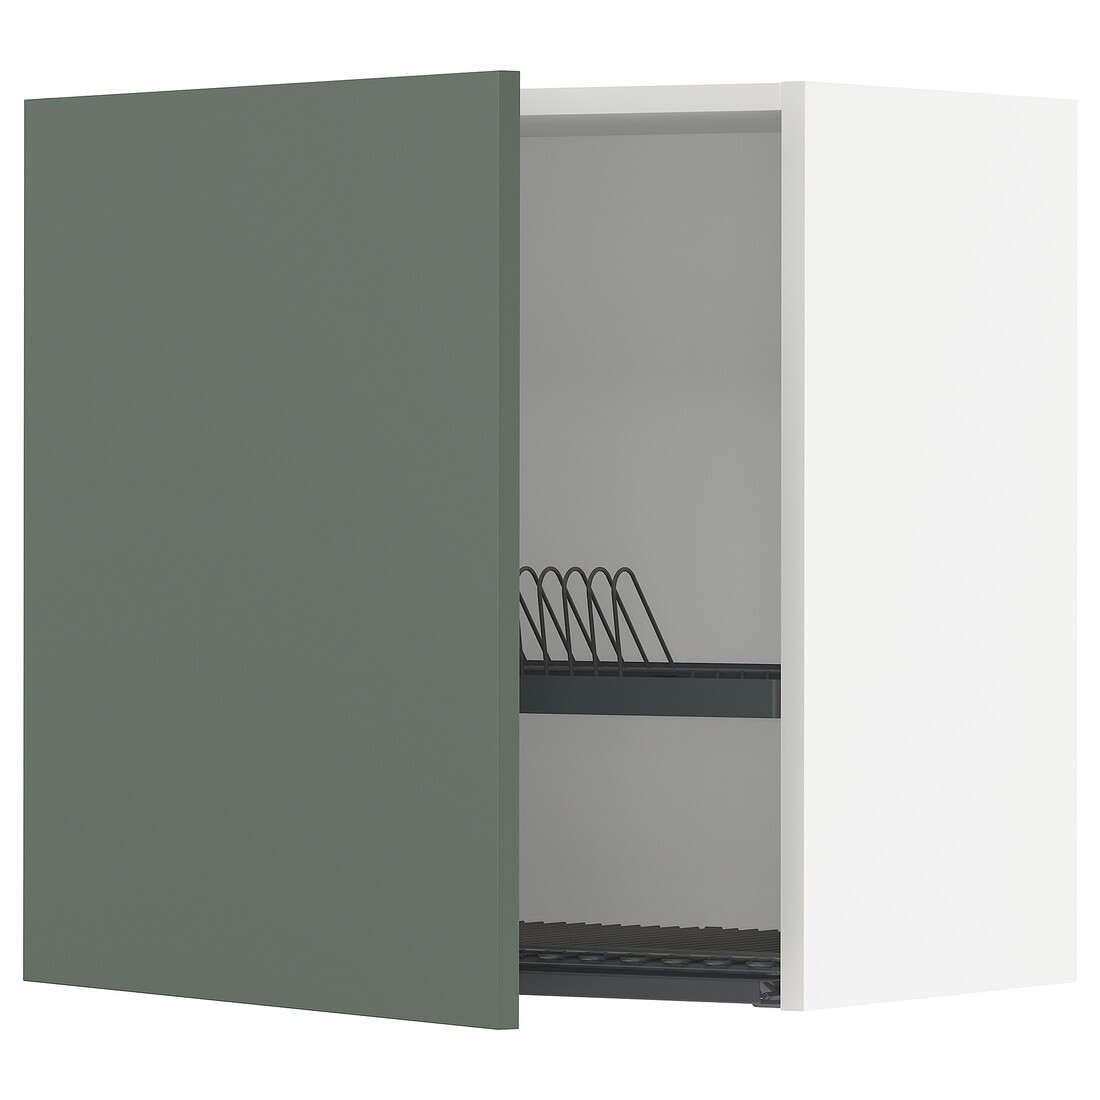 METOD МЕТОД Навесной шкаф с сушилкой, белый / Bodarp серо-зеленый, 60x60 см